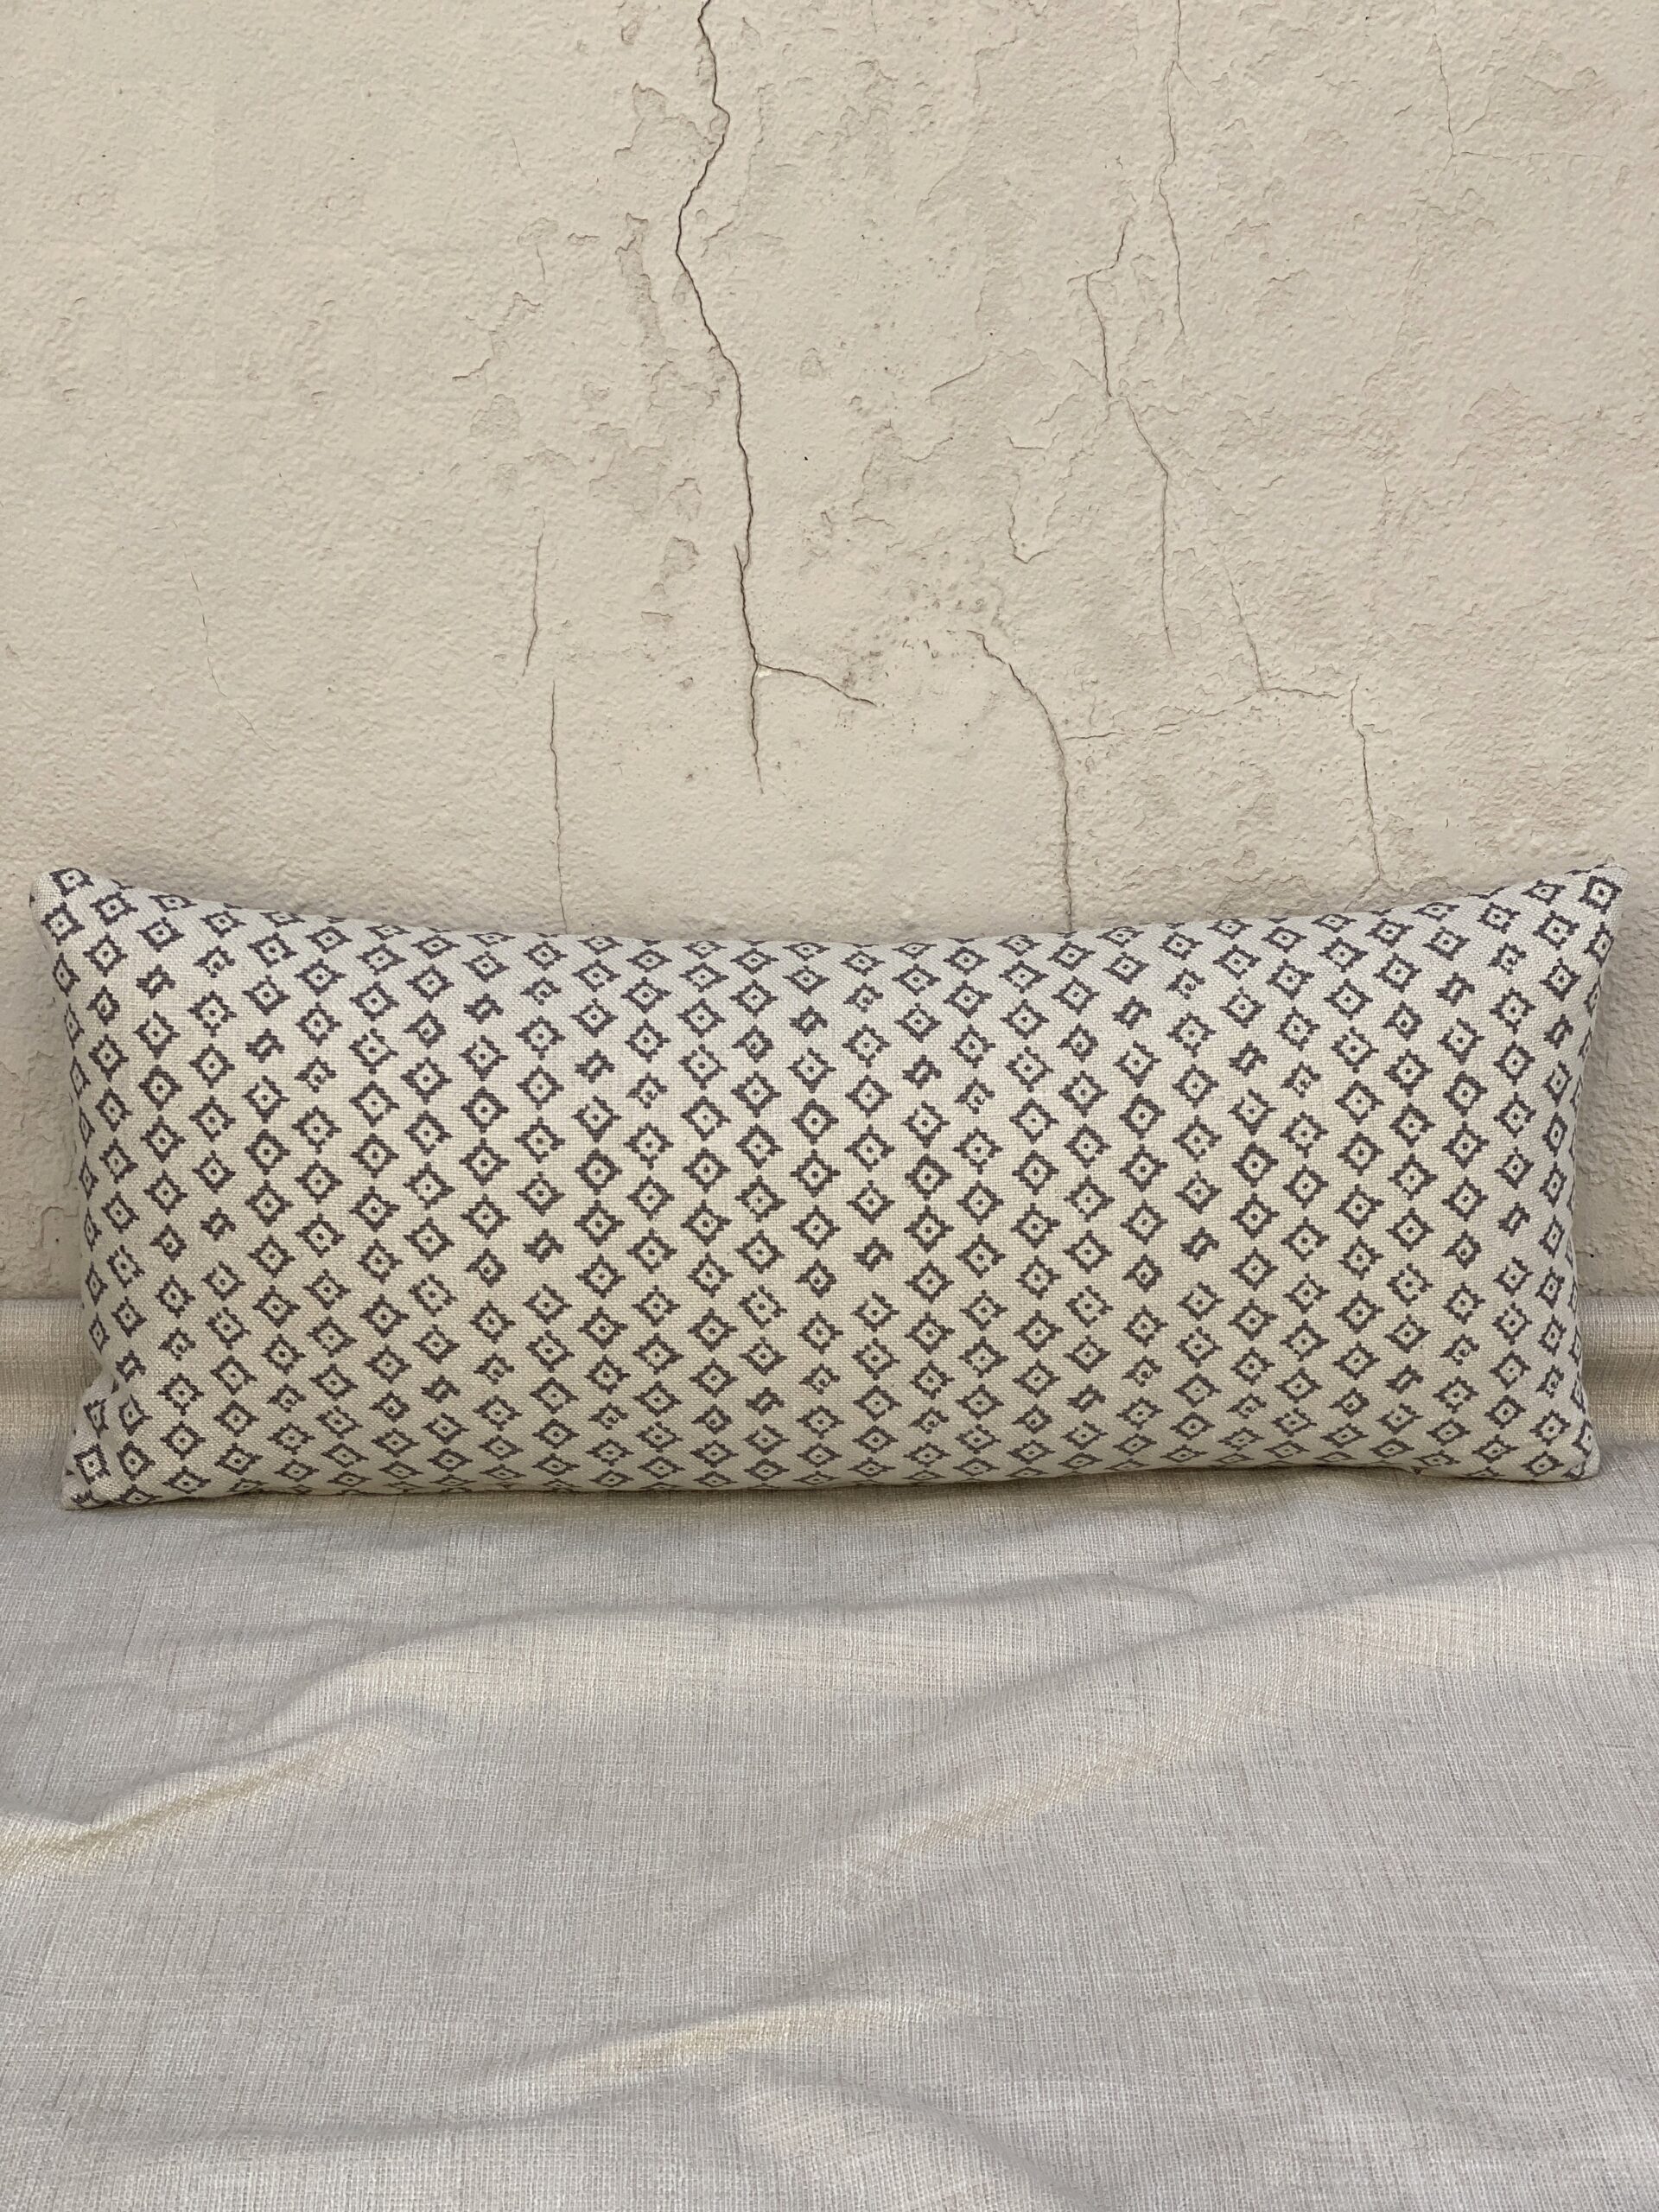 Peter Dunham Textiles Kumbh Pillows